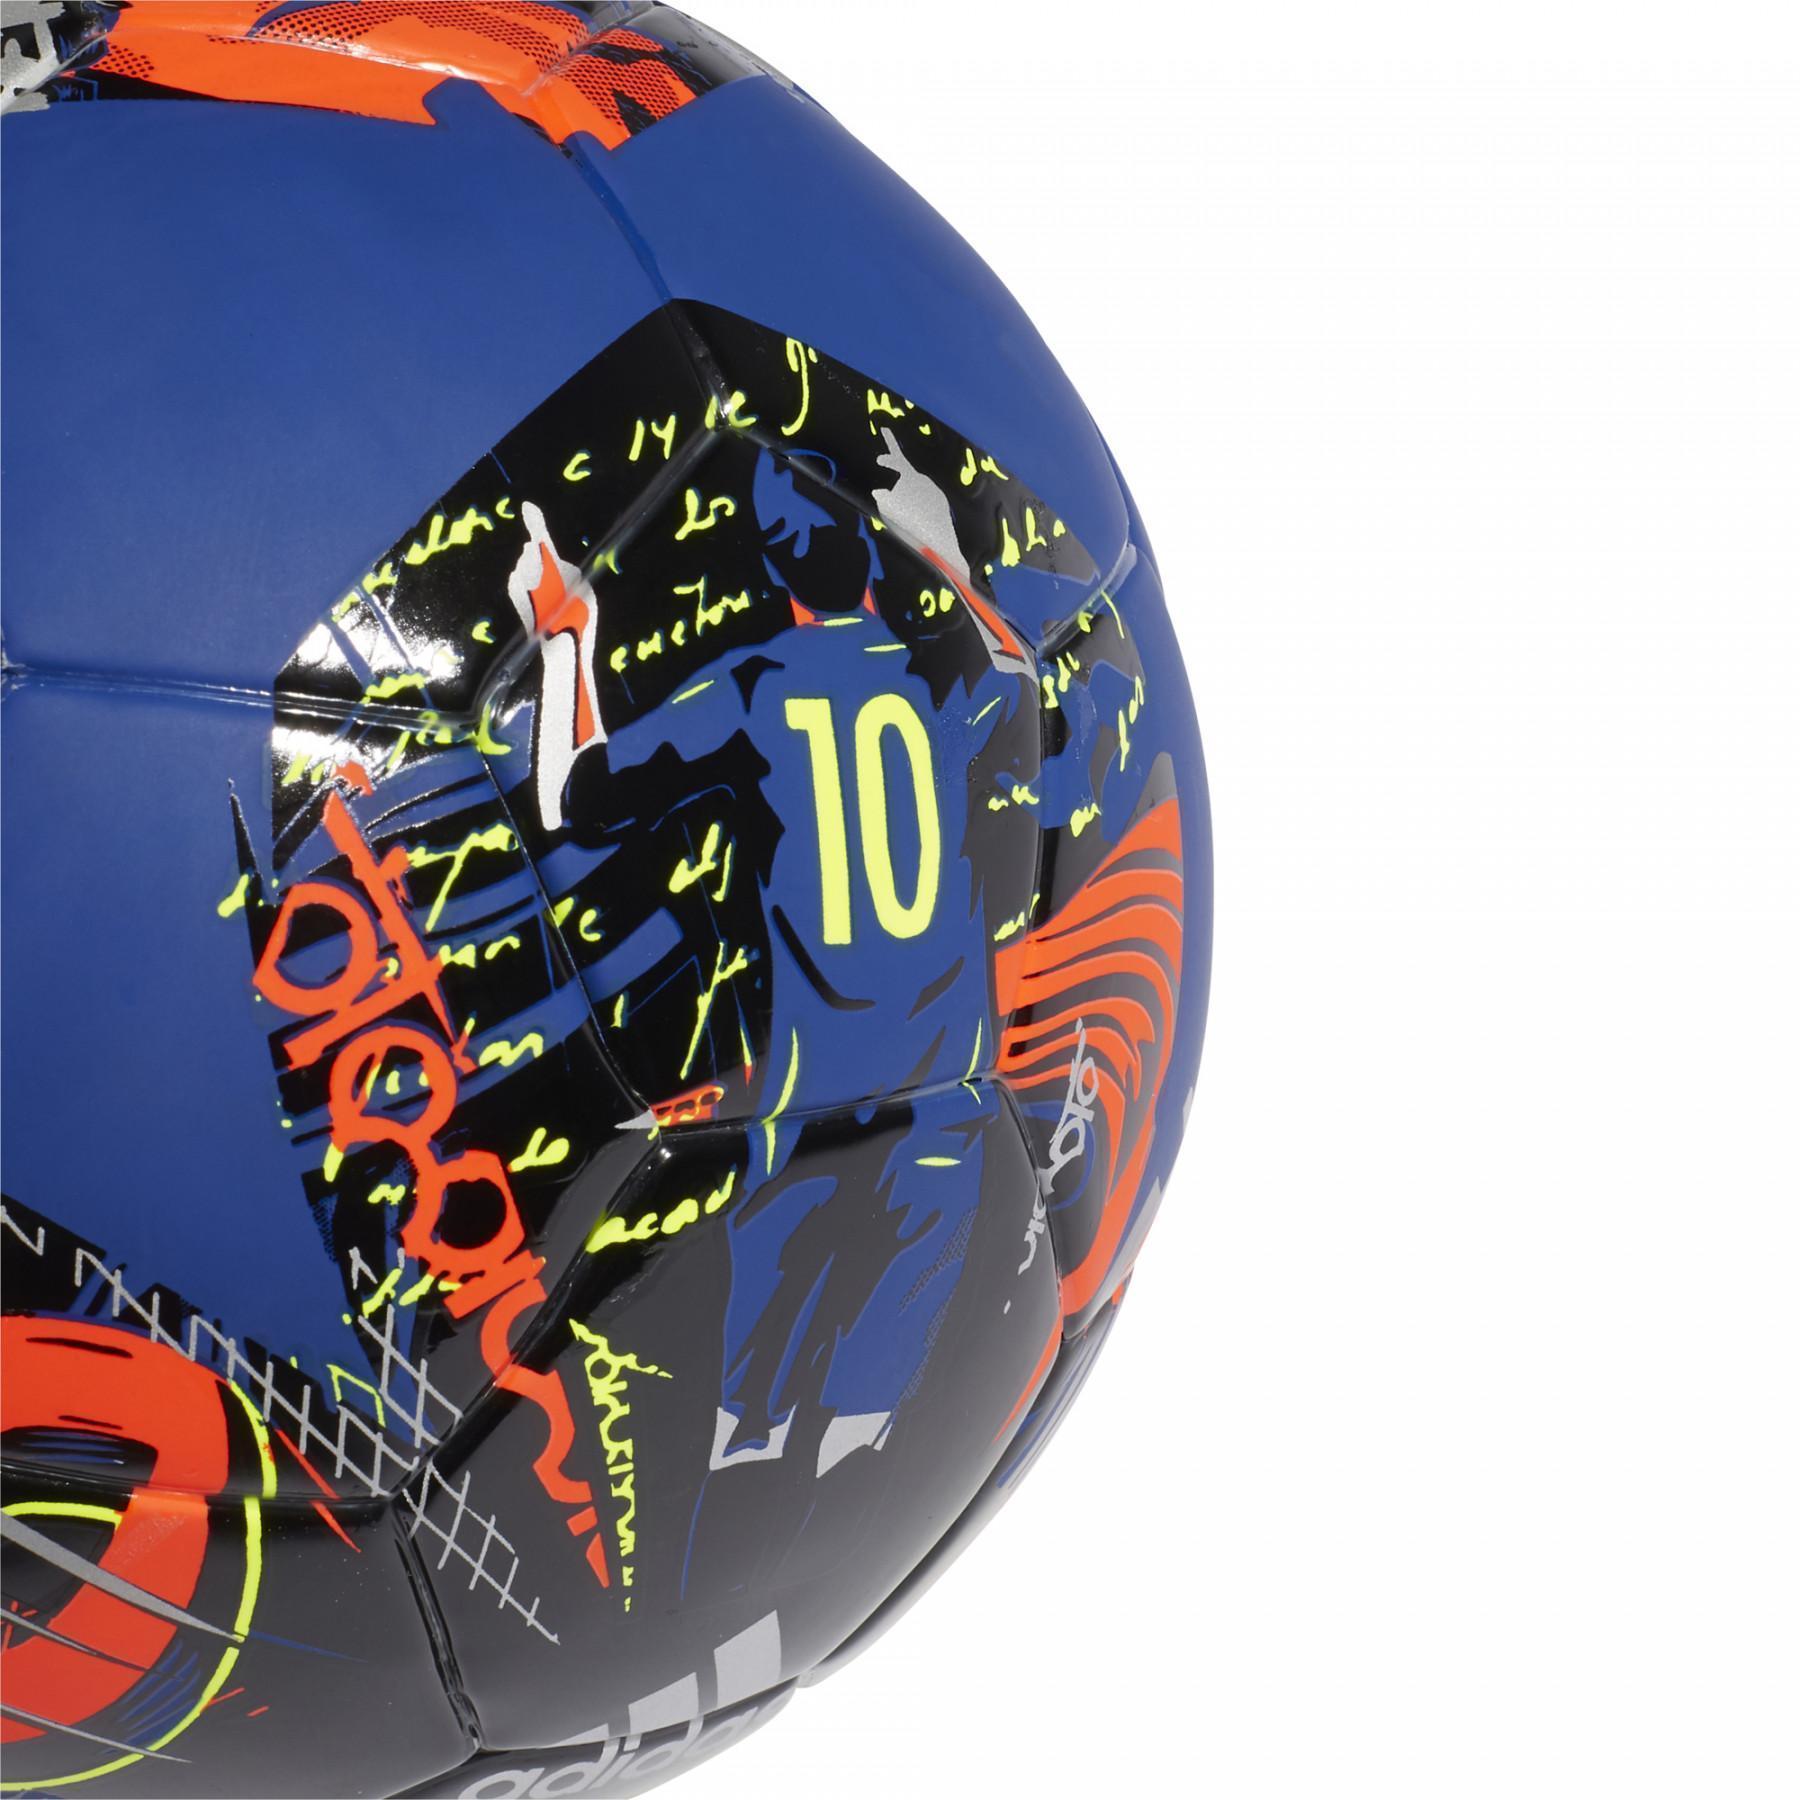 Messi basis mini-ballon